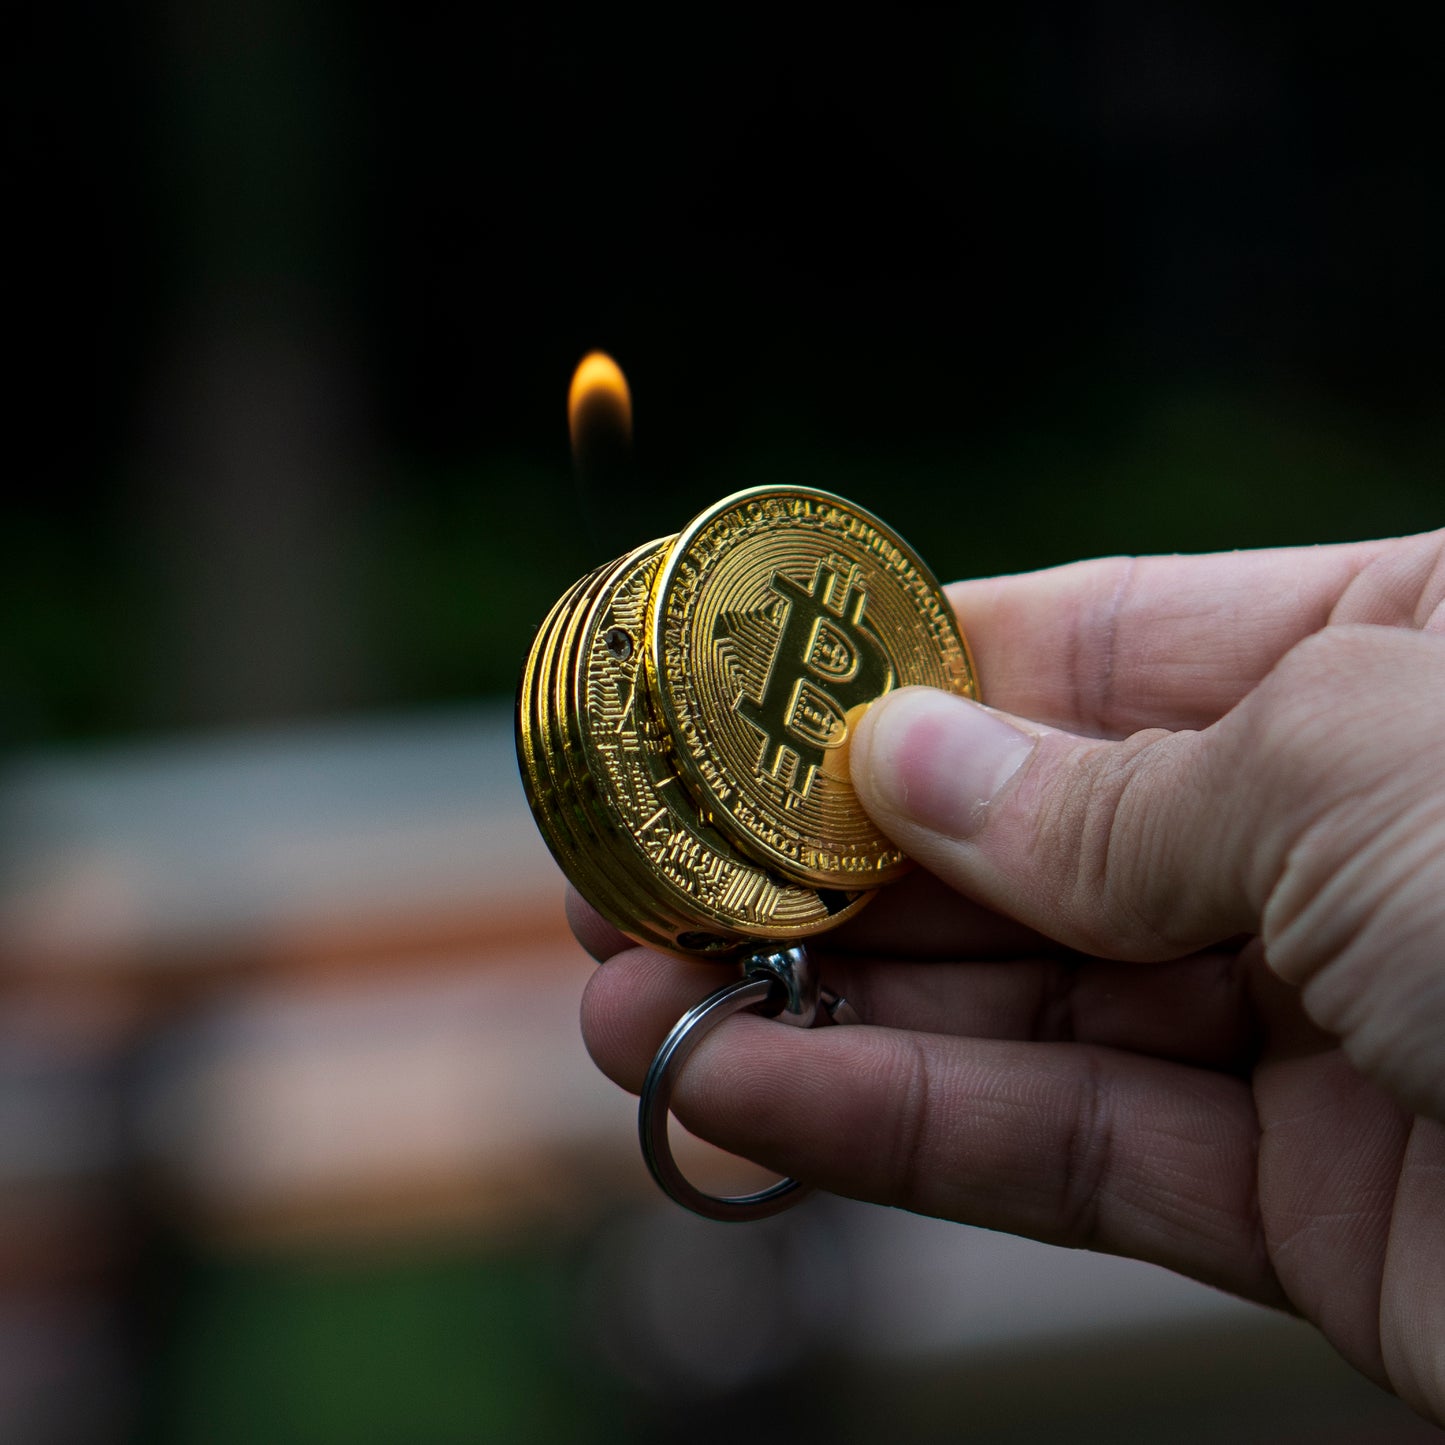 NTH Bitcoin Lighter | Not That High